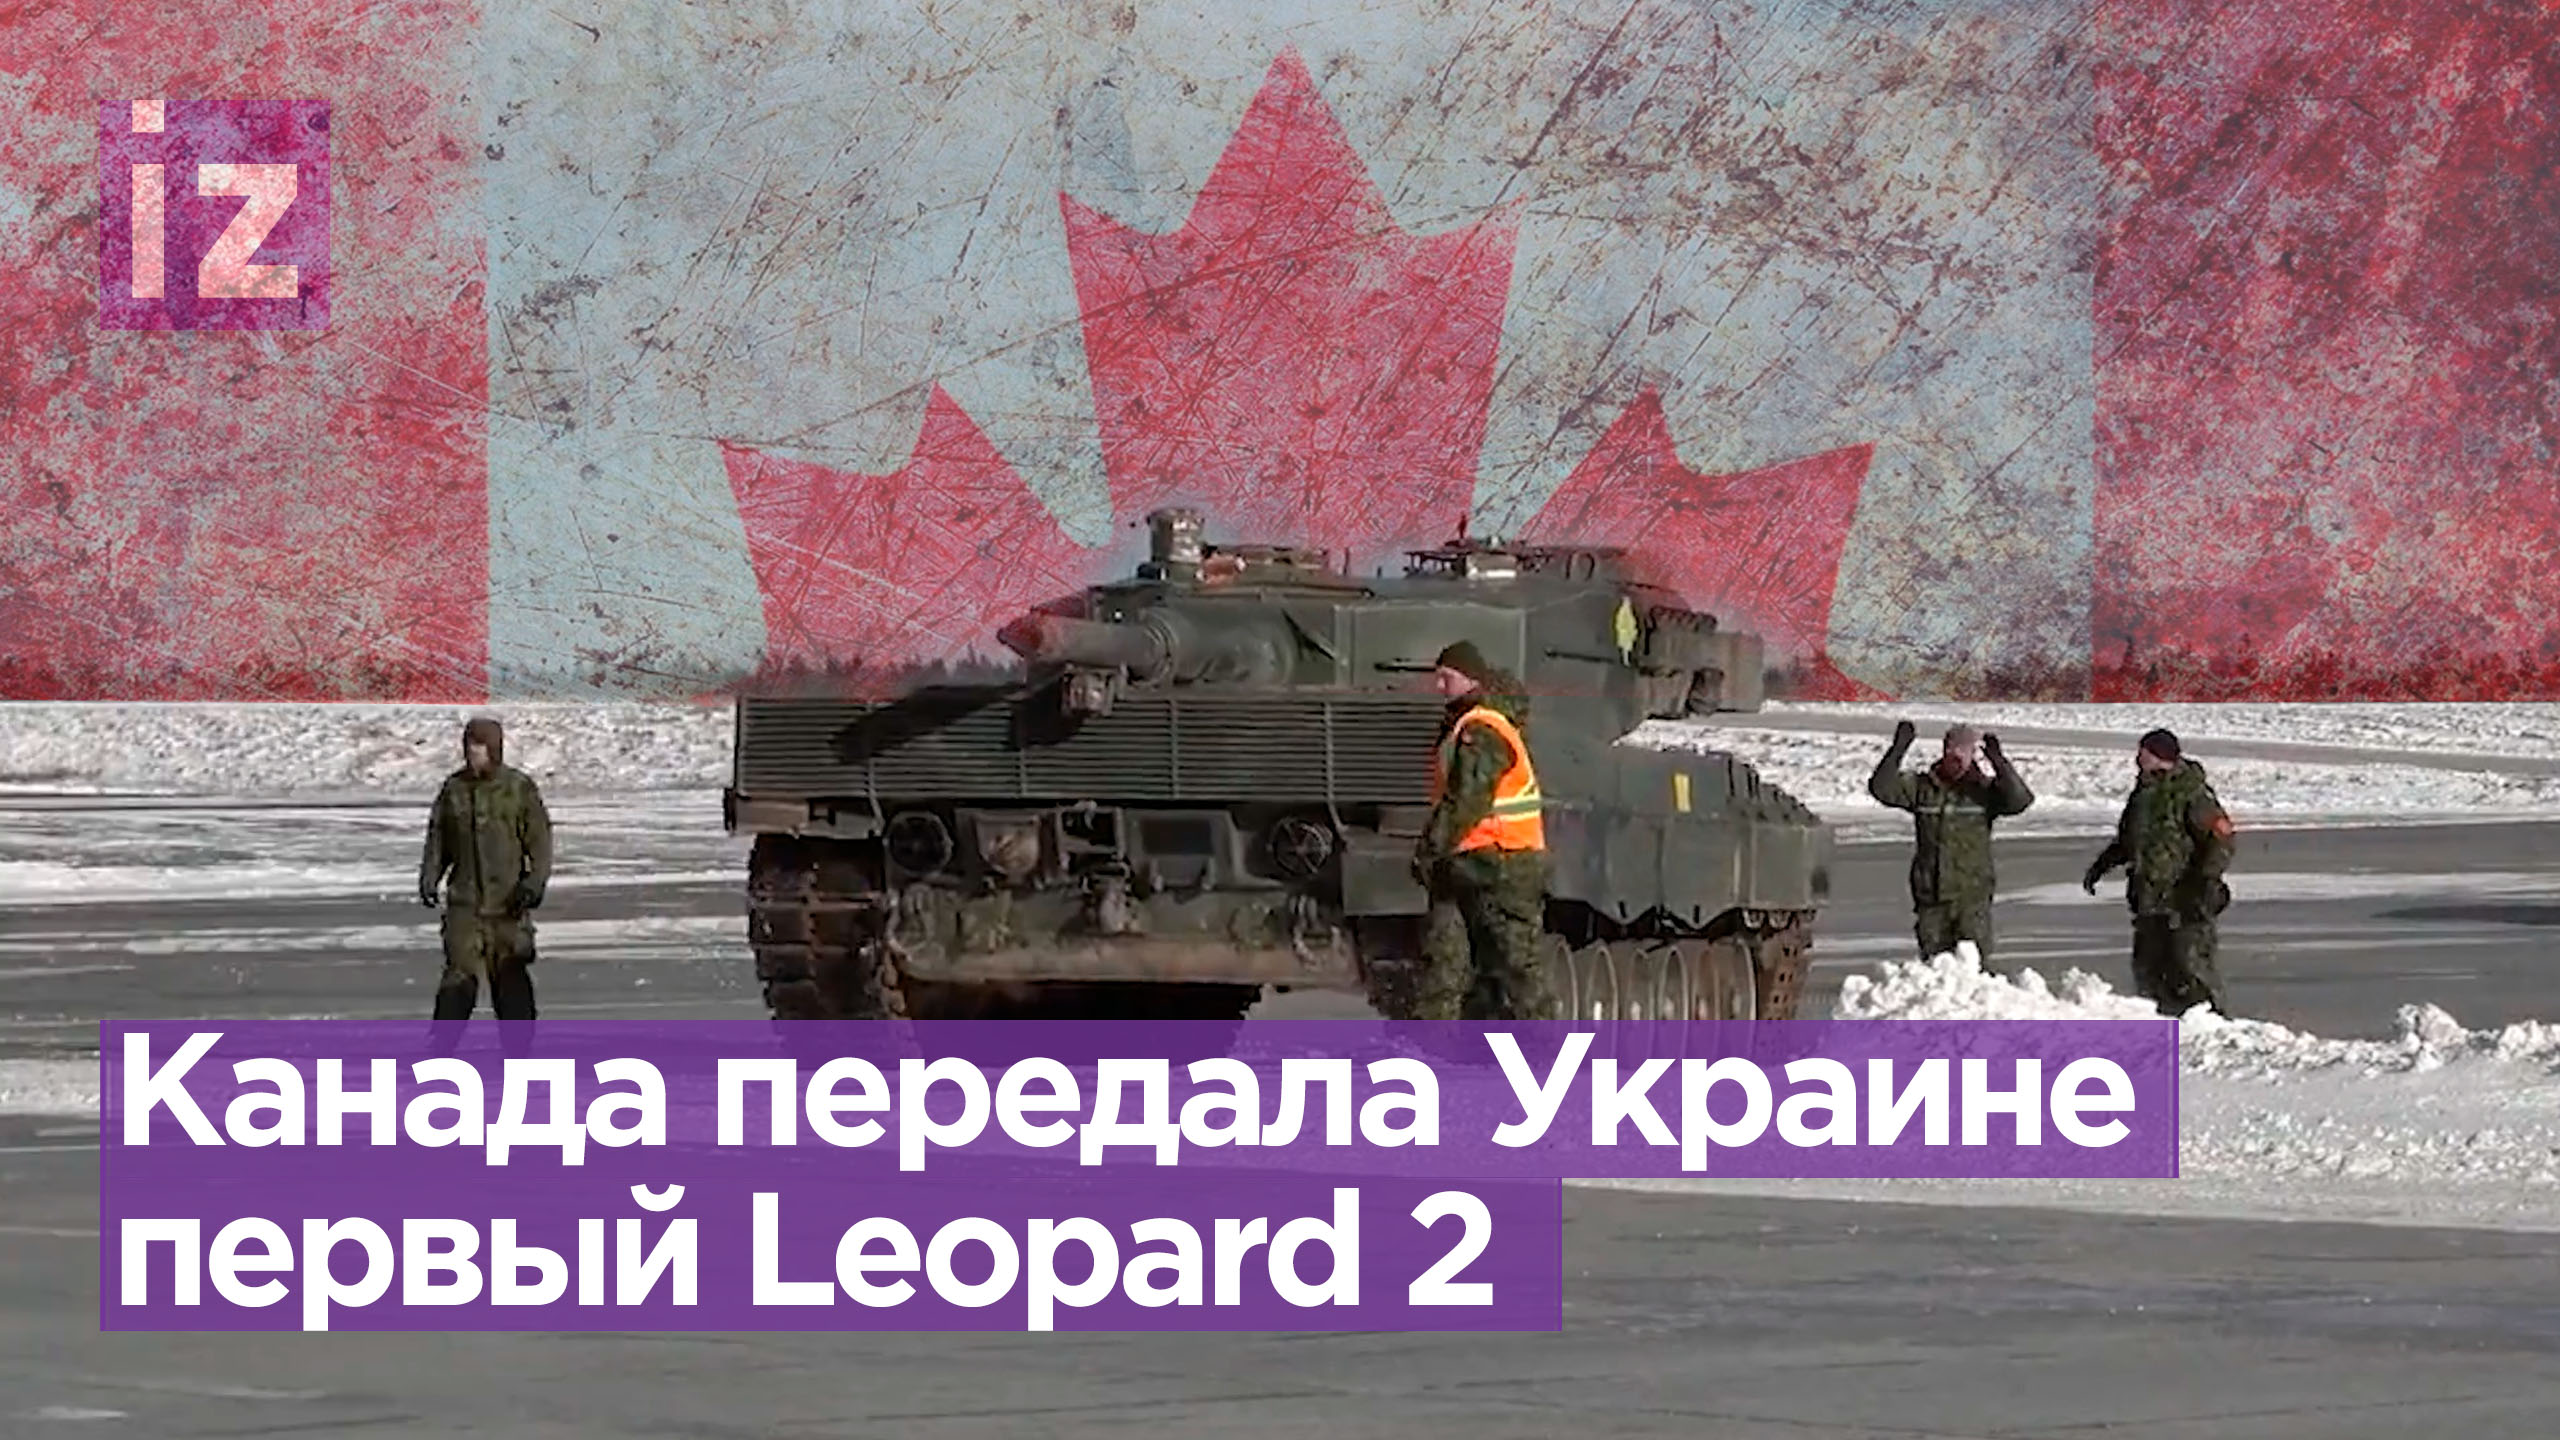 Телеграмм канады о войне в украине фото 2